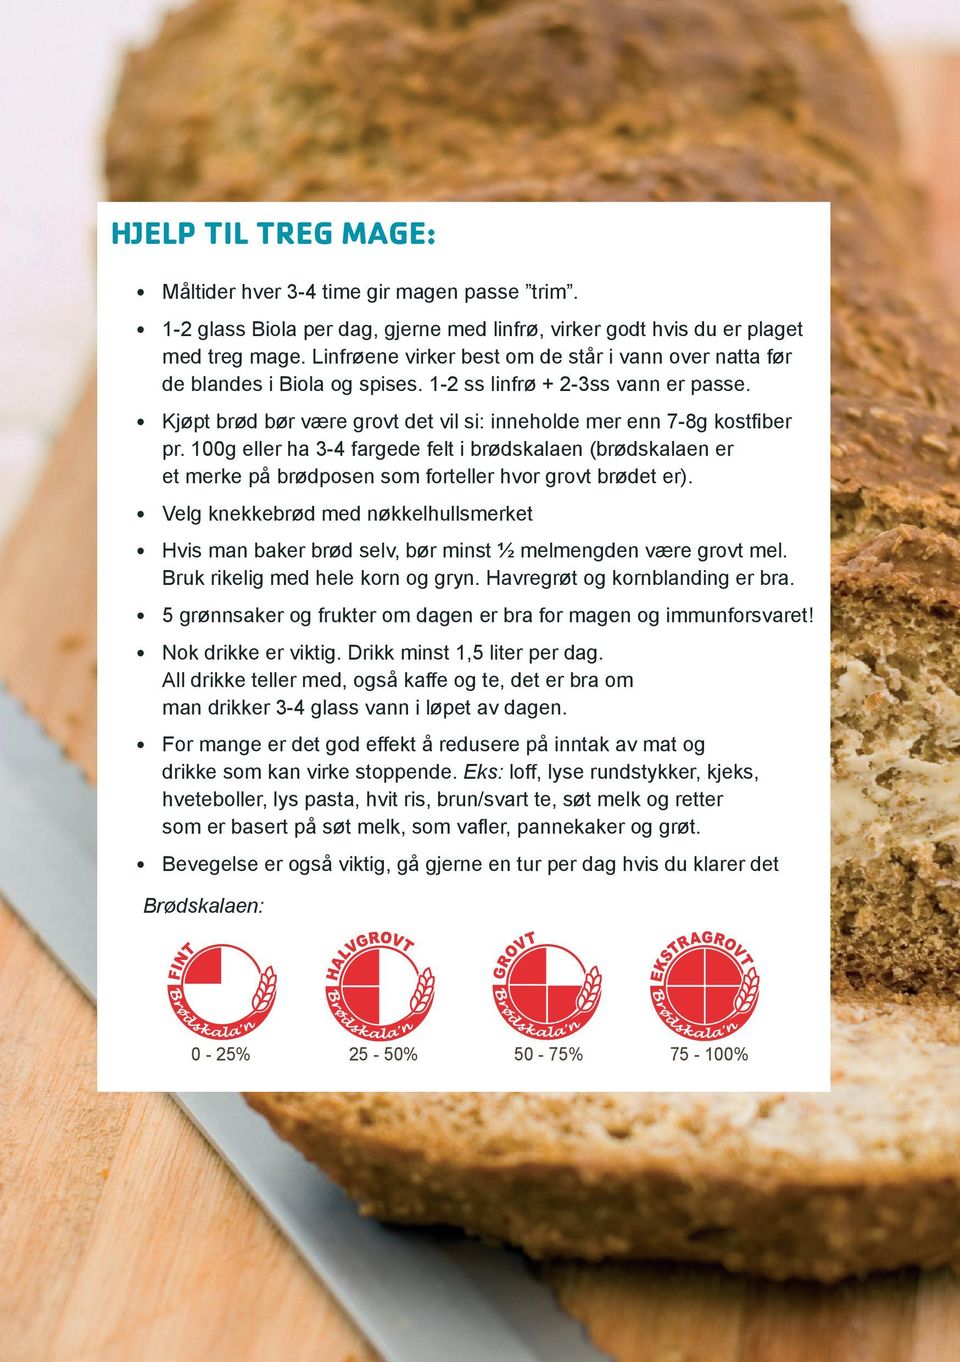 100g eller ha 3-4 fargede felt i brødskalaen (brødskalaen er et merke på brødposen som forteller hvor grovt brødet er).